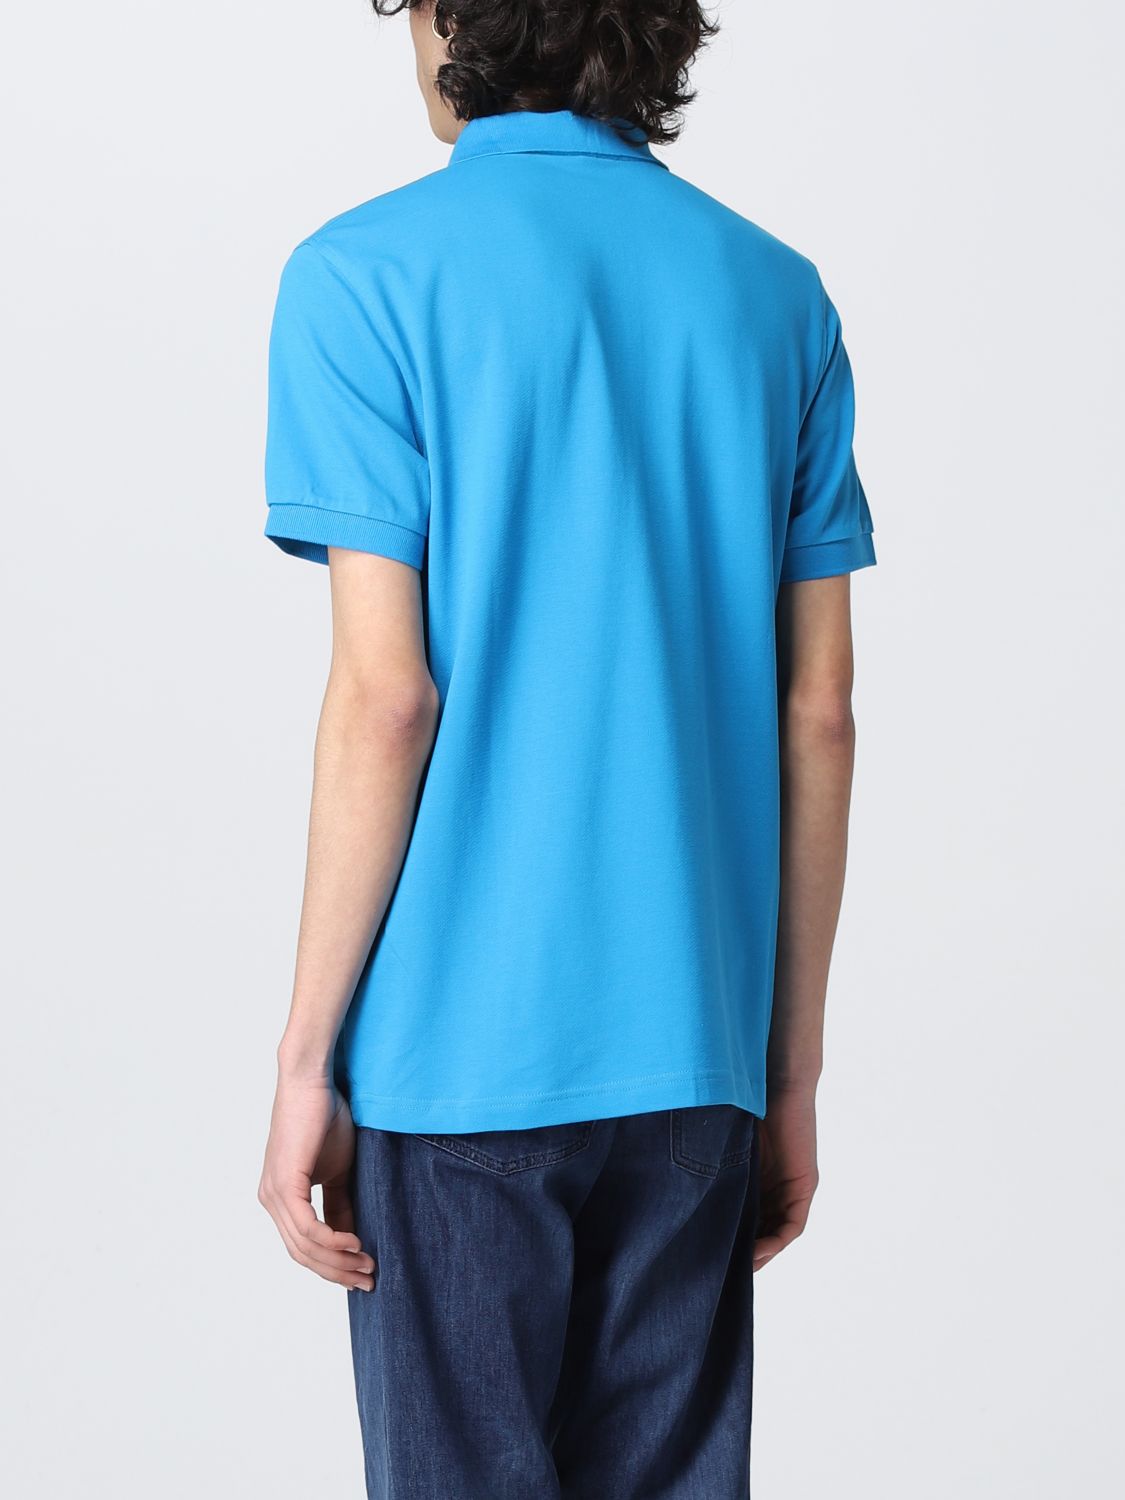 SUN 68: polo shirt for men - Turquoise | Sun 68 polo shirt A32109 ...